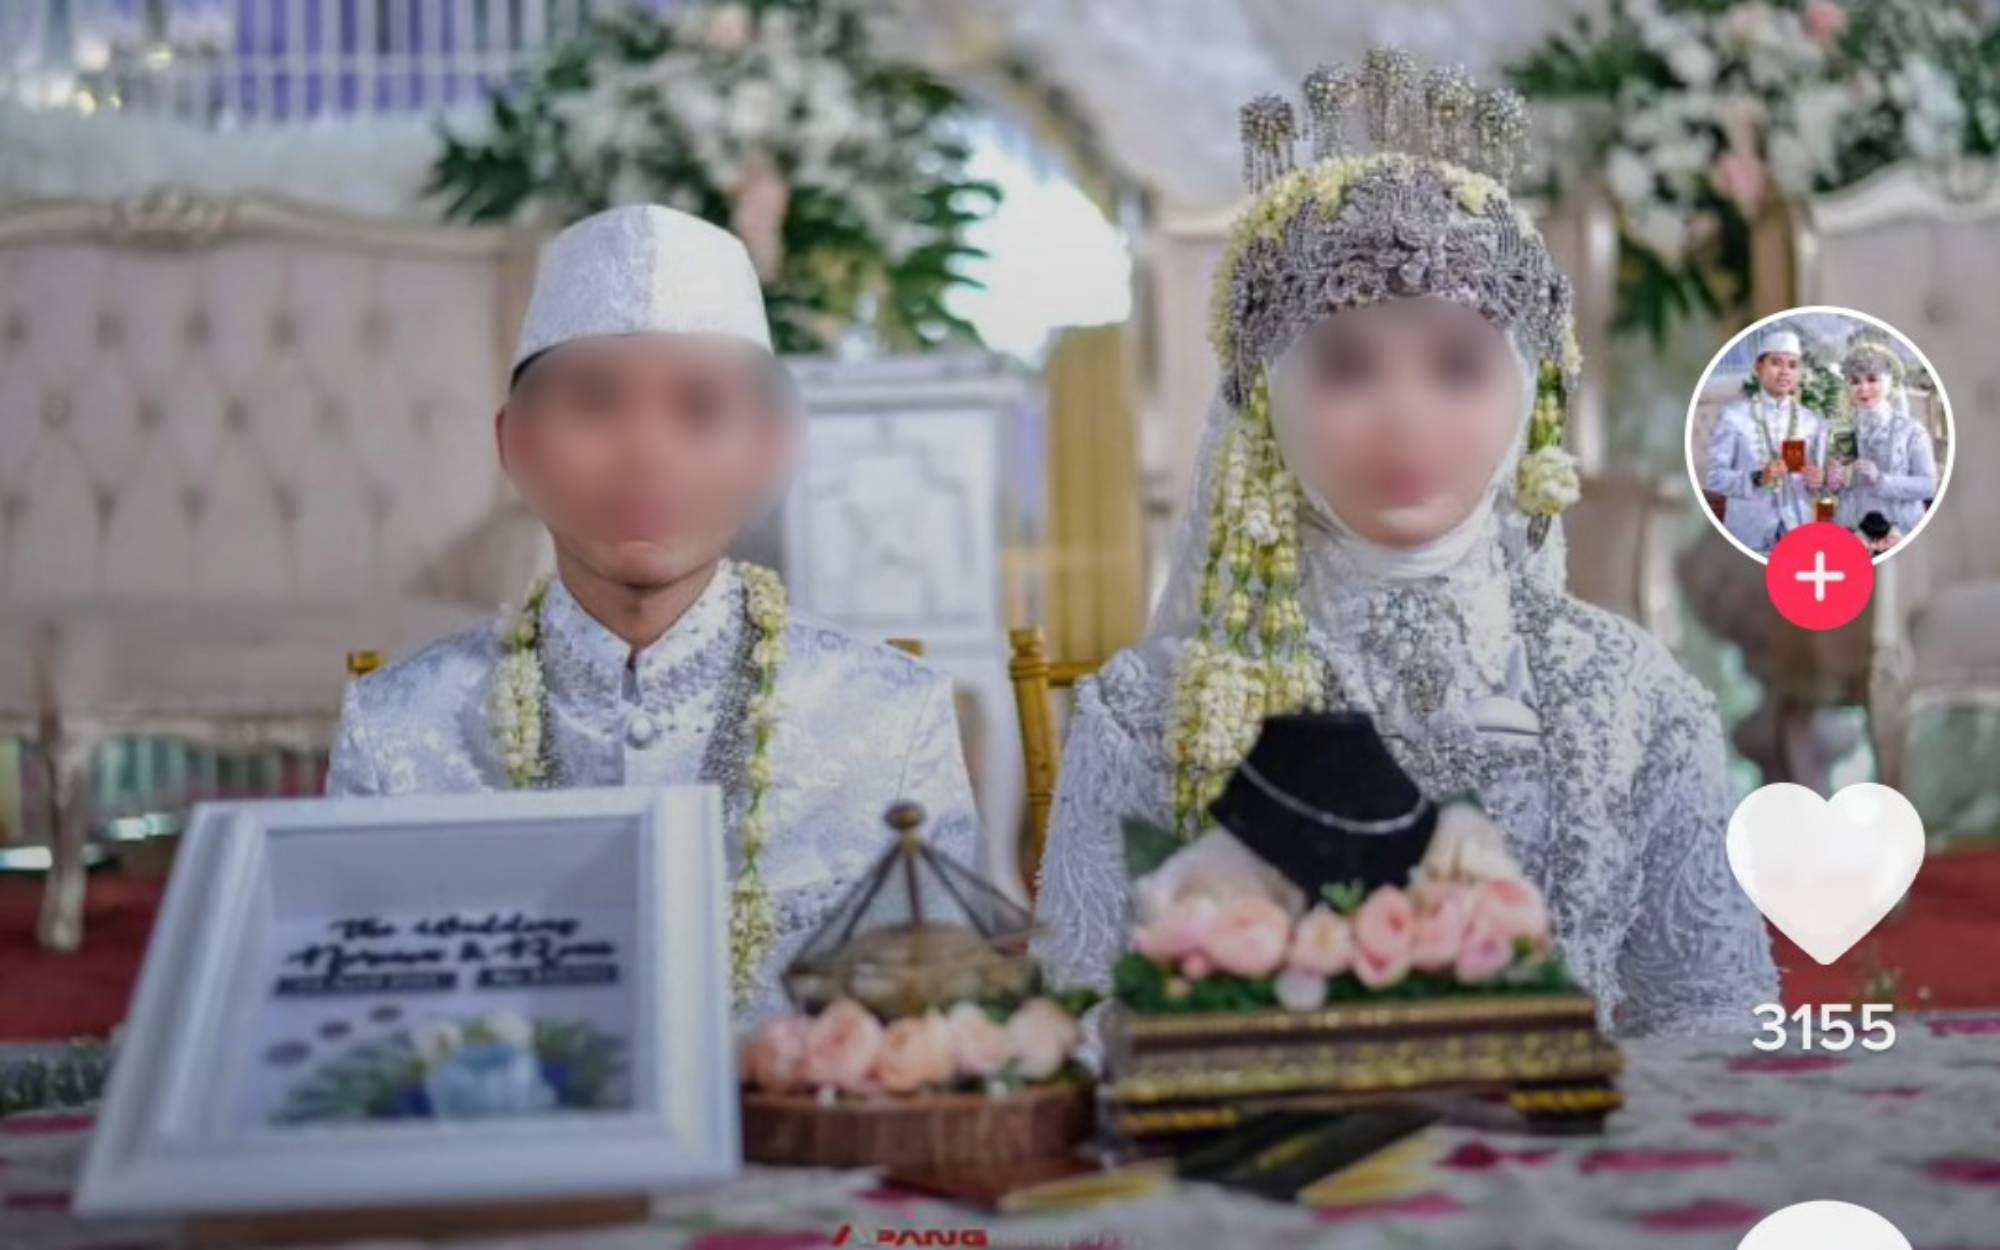 632 Anak di Jogja Meminta Dispensasi Menikah, Sleman Paling Banyak - JPNN.com Jogja